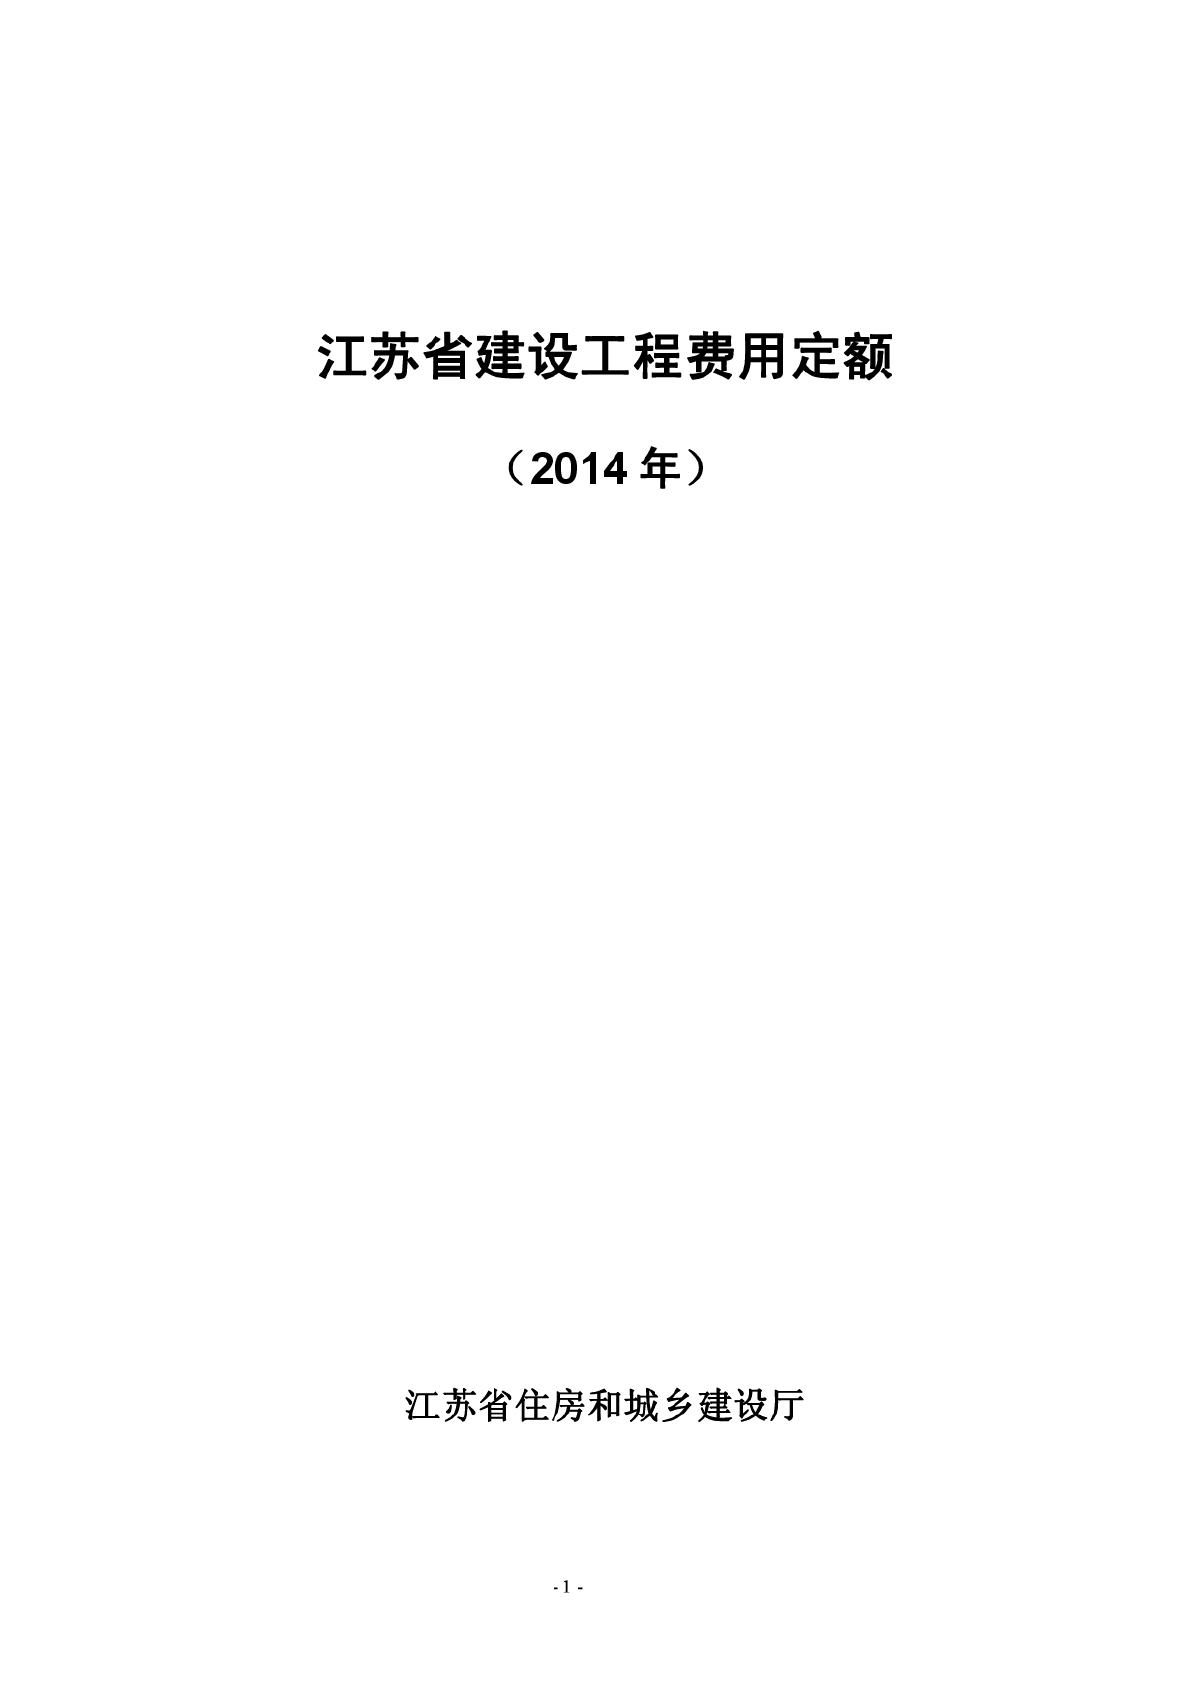 最新2014版江苏省建设工程费用定额